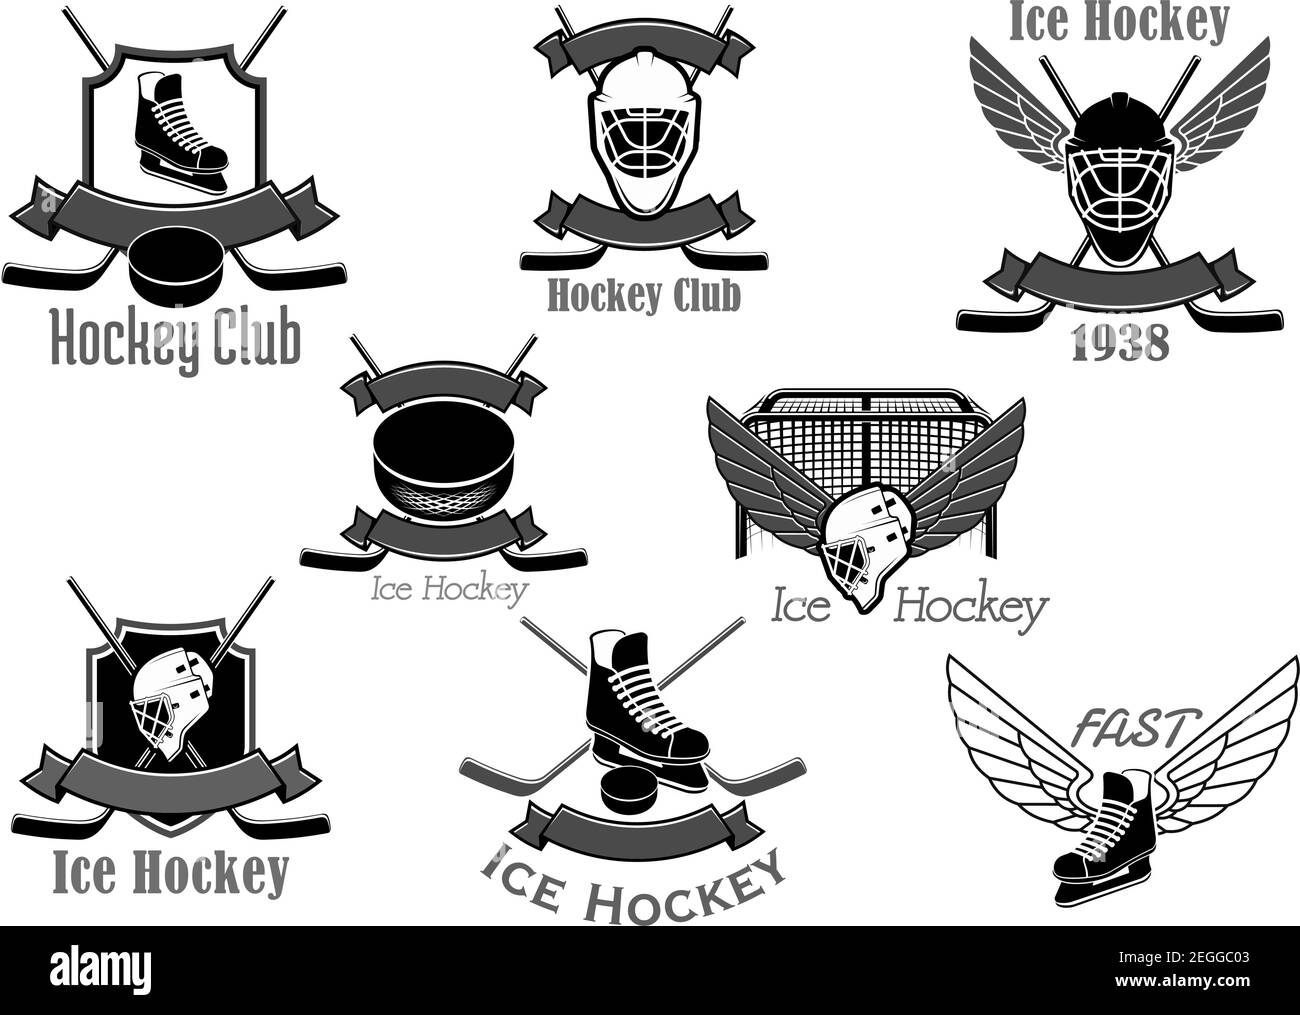 Eishockey-Club Vektor-Symbole gesetzt. Isolierte Symbole von Hockey-Stick und Puck, Torwartmaske und Tor Tore und Eislaufen mit Flügeln und Bändern. Badg Stock Vektor